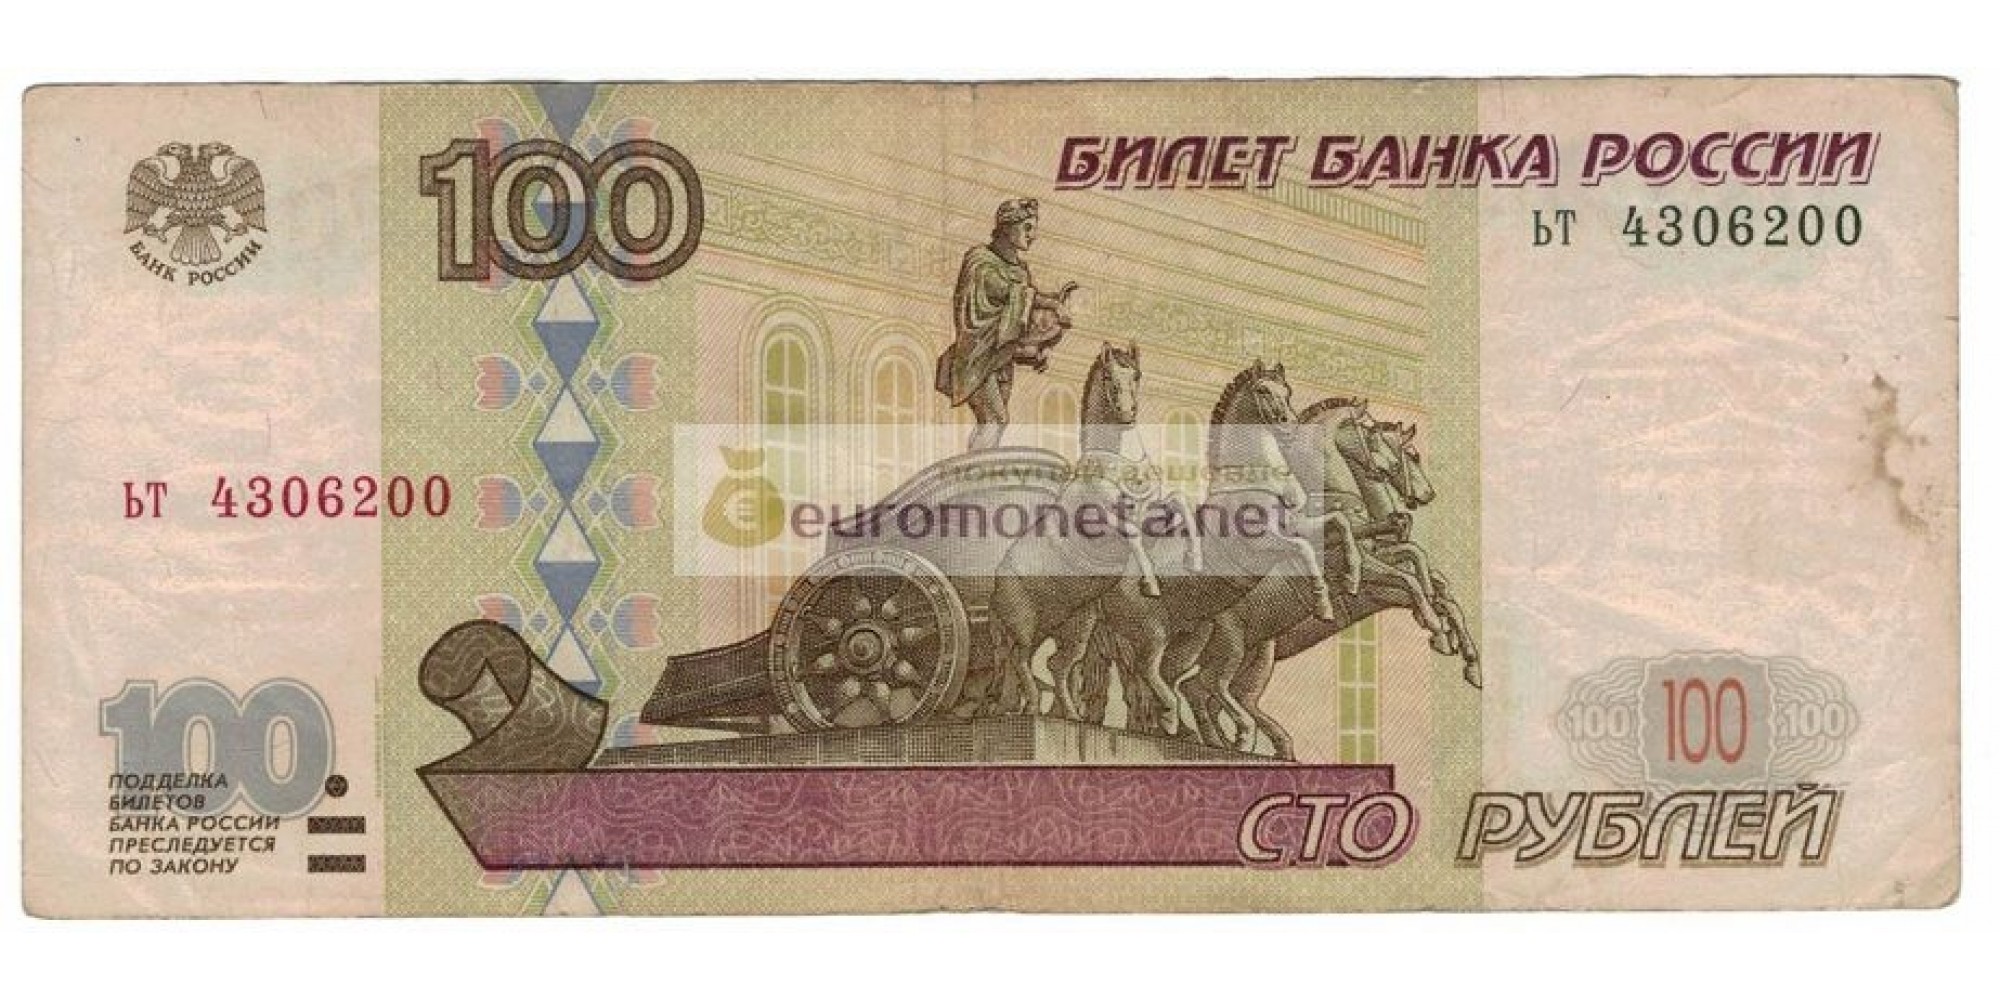 Россия 100 рублей 1997 год модификация 2001 год серия ьт 4306200